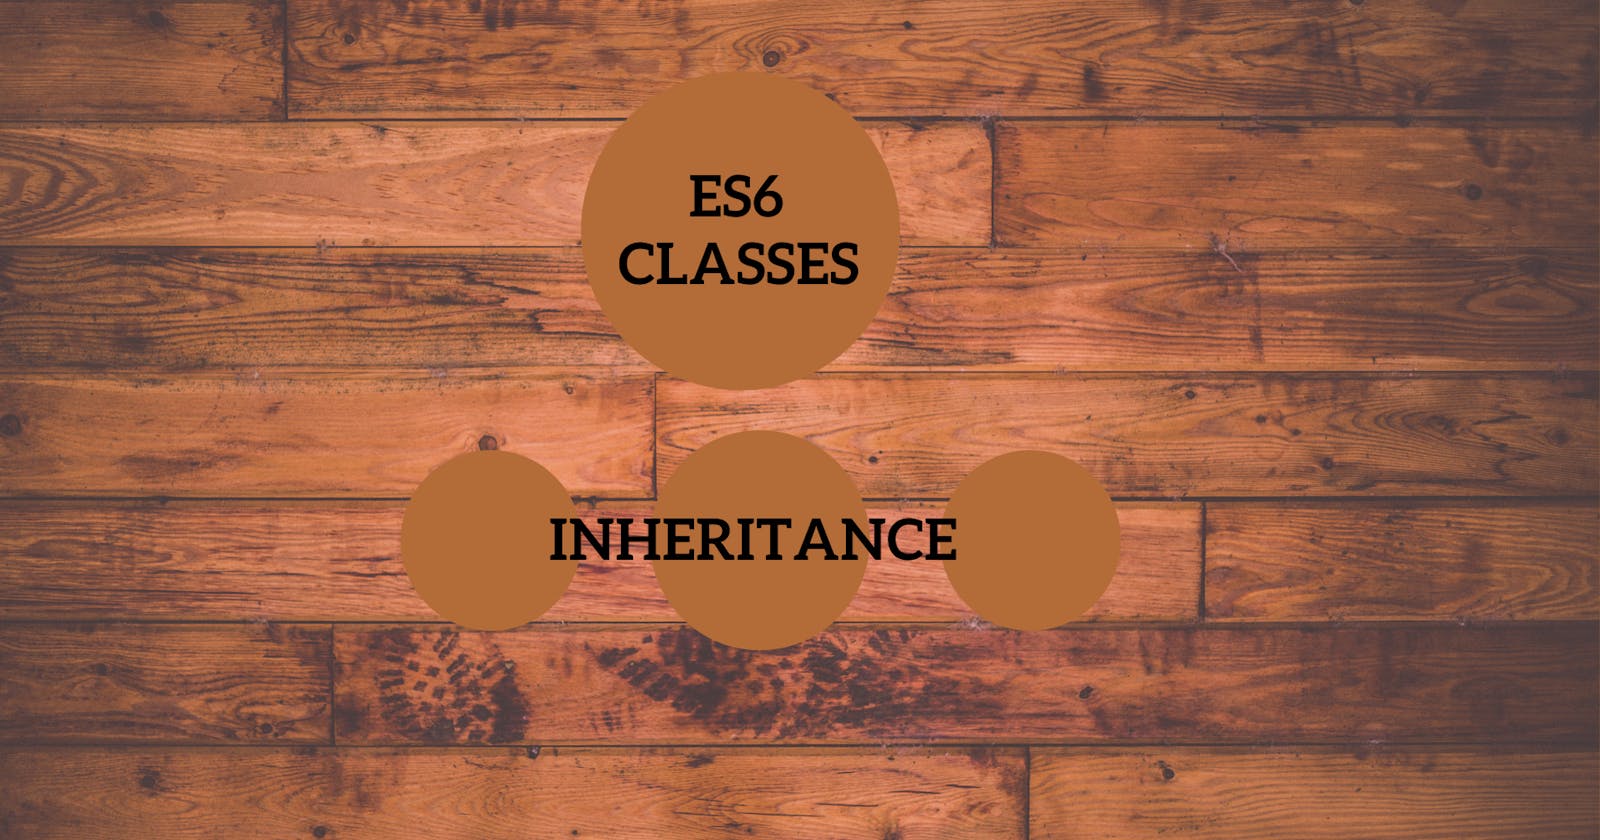 ES6 Classes and Inheritance